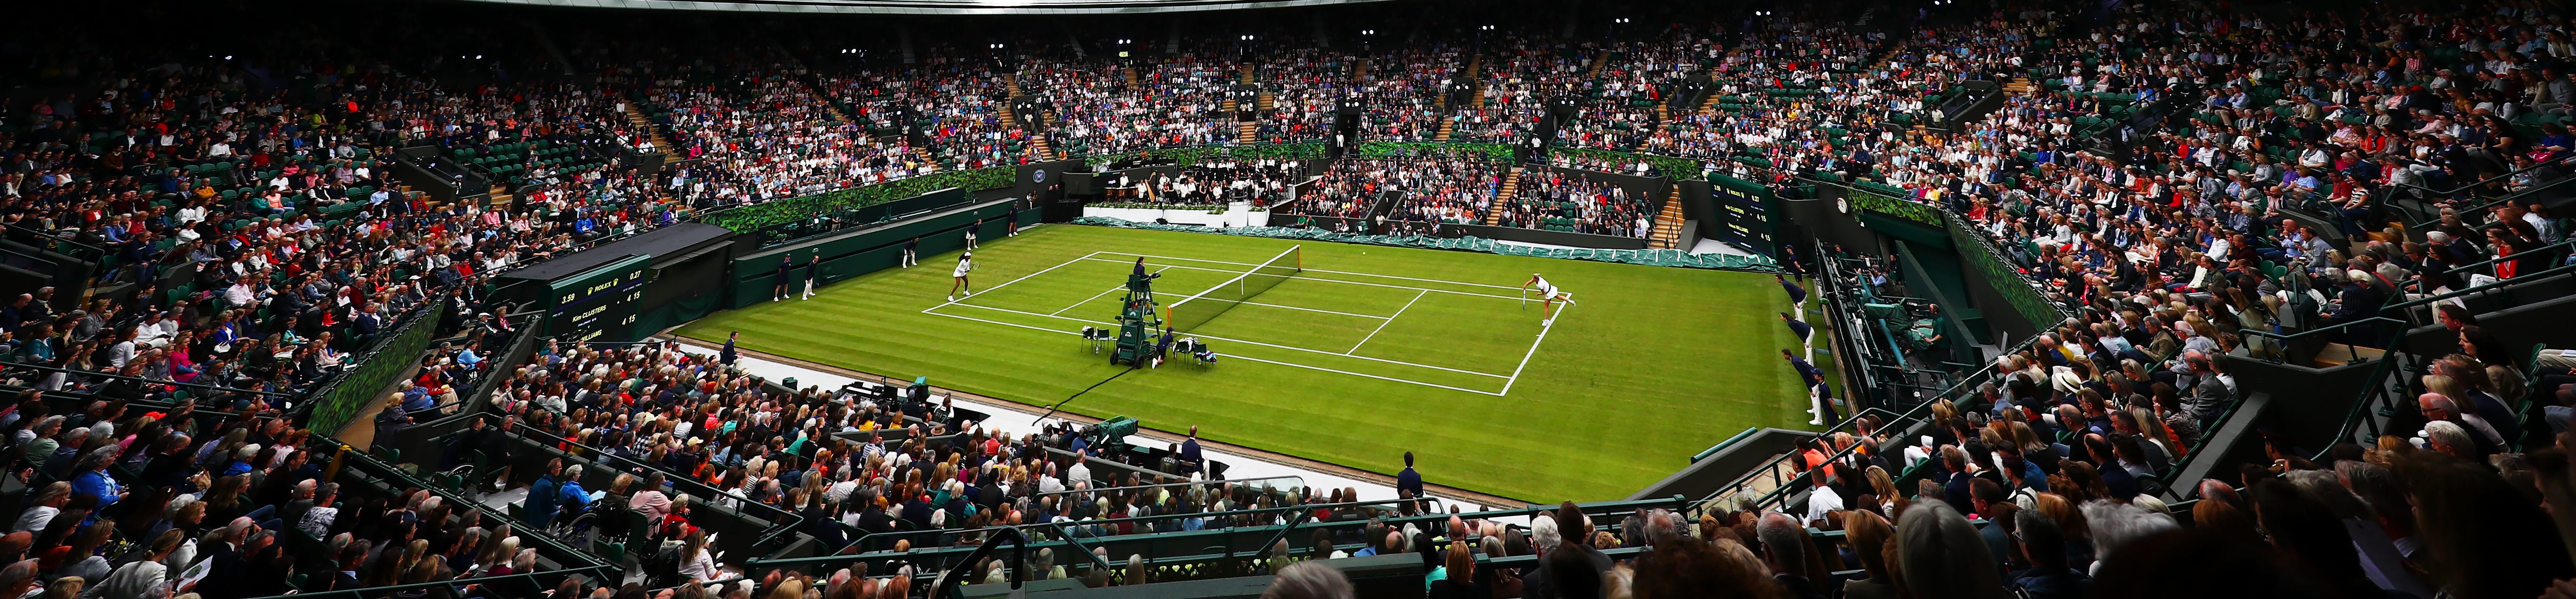 Wimbledon 2019: tutto quello che c'è da sapere sull'edizione più incerta degli ultimi anni